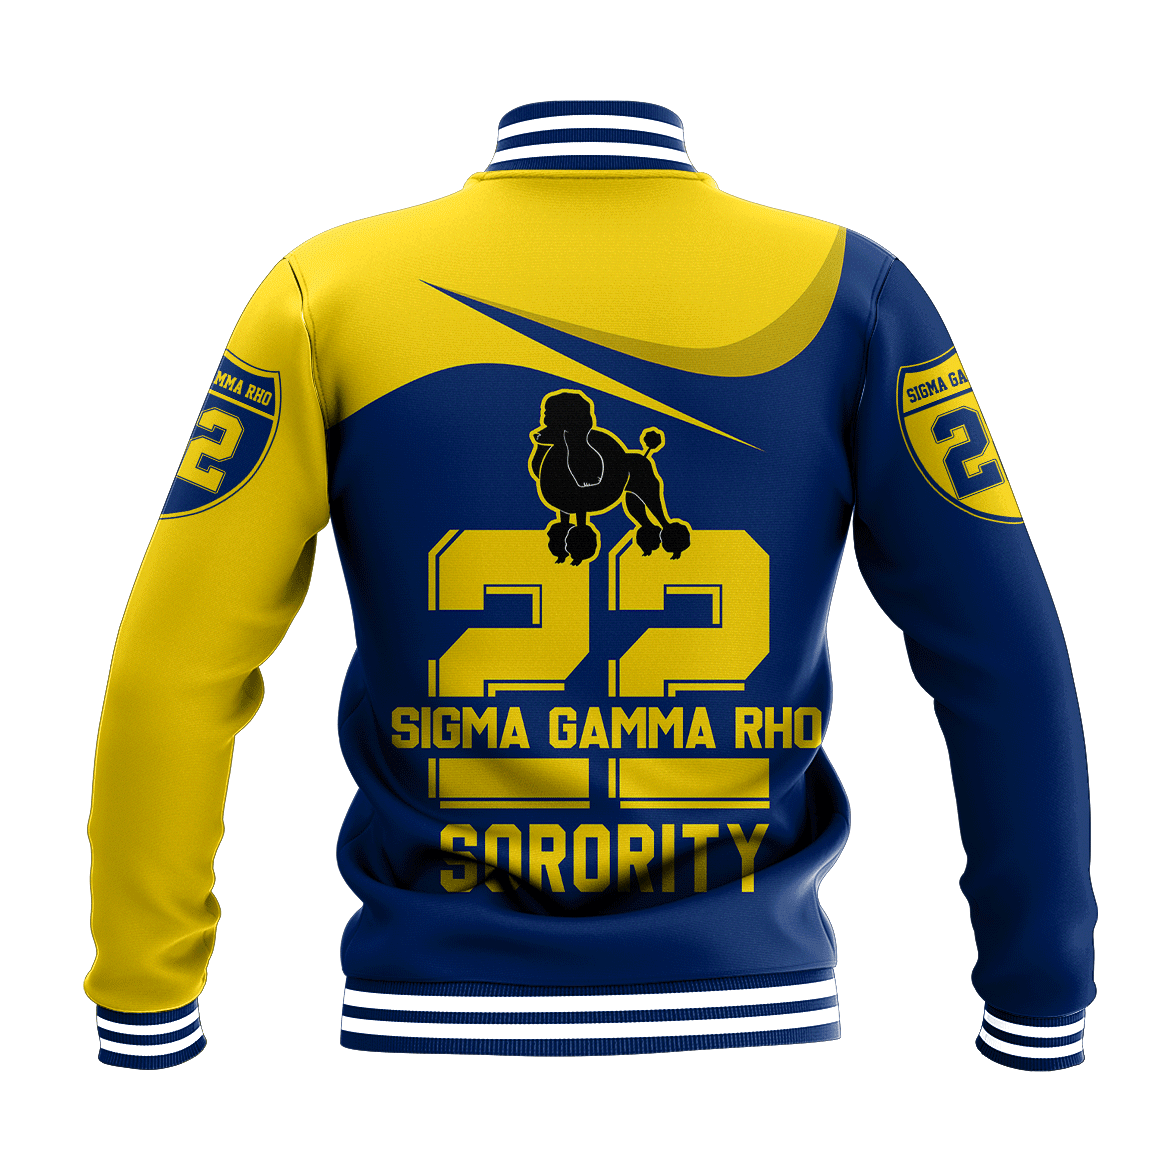 Sorority Jacket - Sigma Gamma Rho Curve Style Baseball Jacket